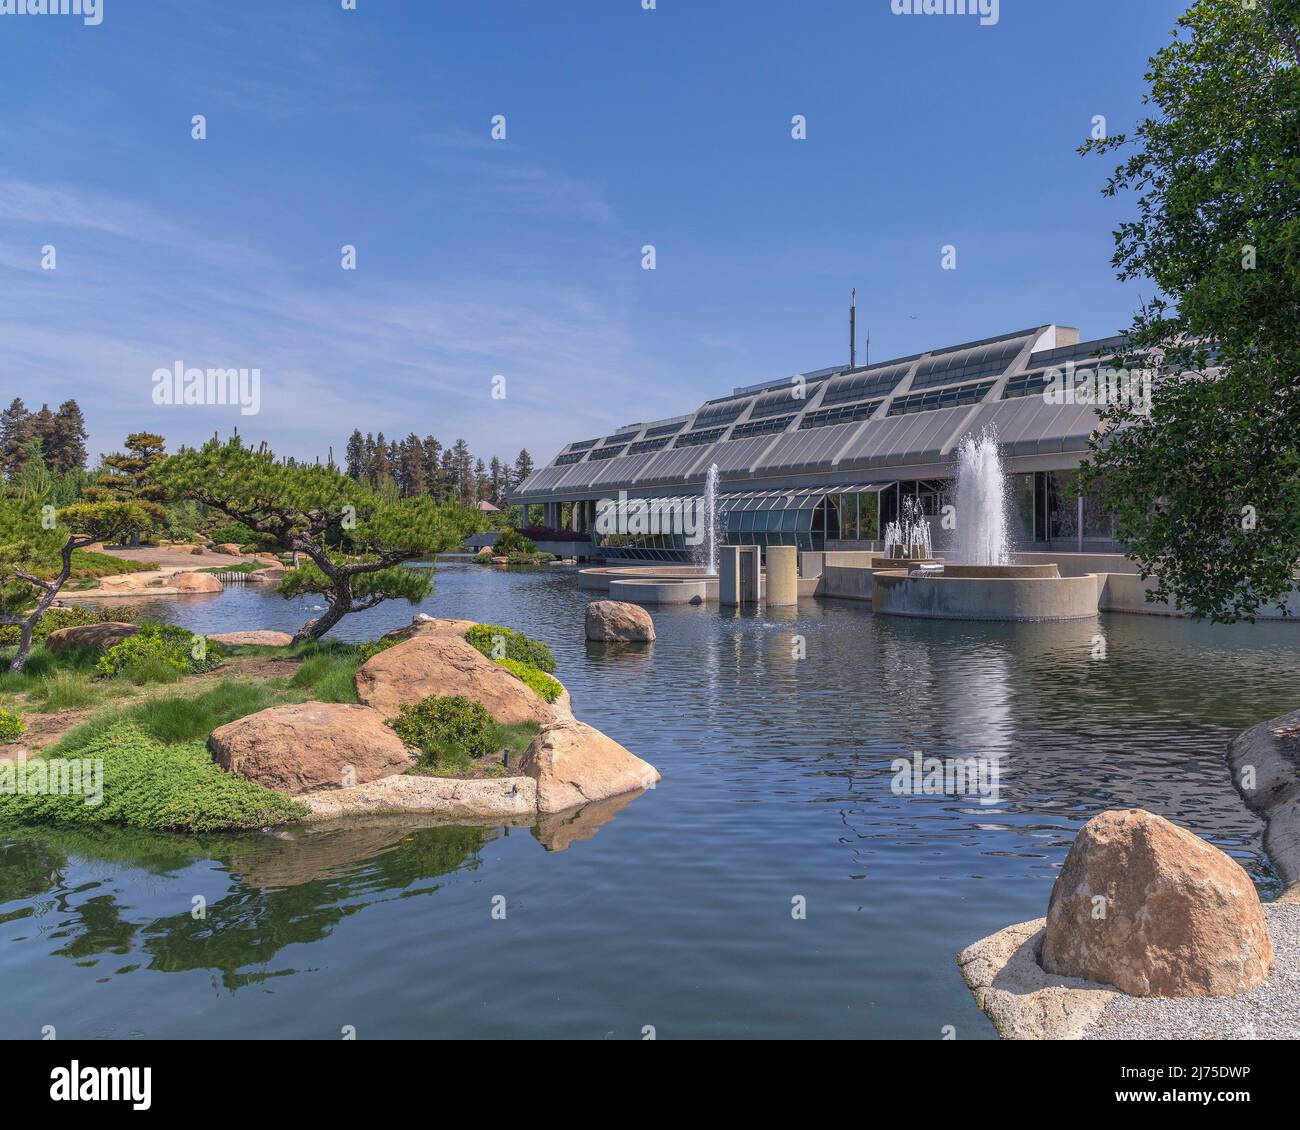 Van Nuys, CA, USA - 5. Mai 2022: Außenansicht der Tillman Wasseraufbereitungsanlage, die neben Suiho-en, einem öffentlichen japanischen Garten in Van Nuys, liegt. Stockfoto